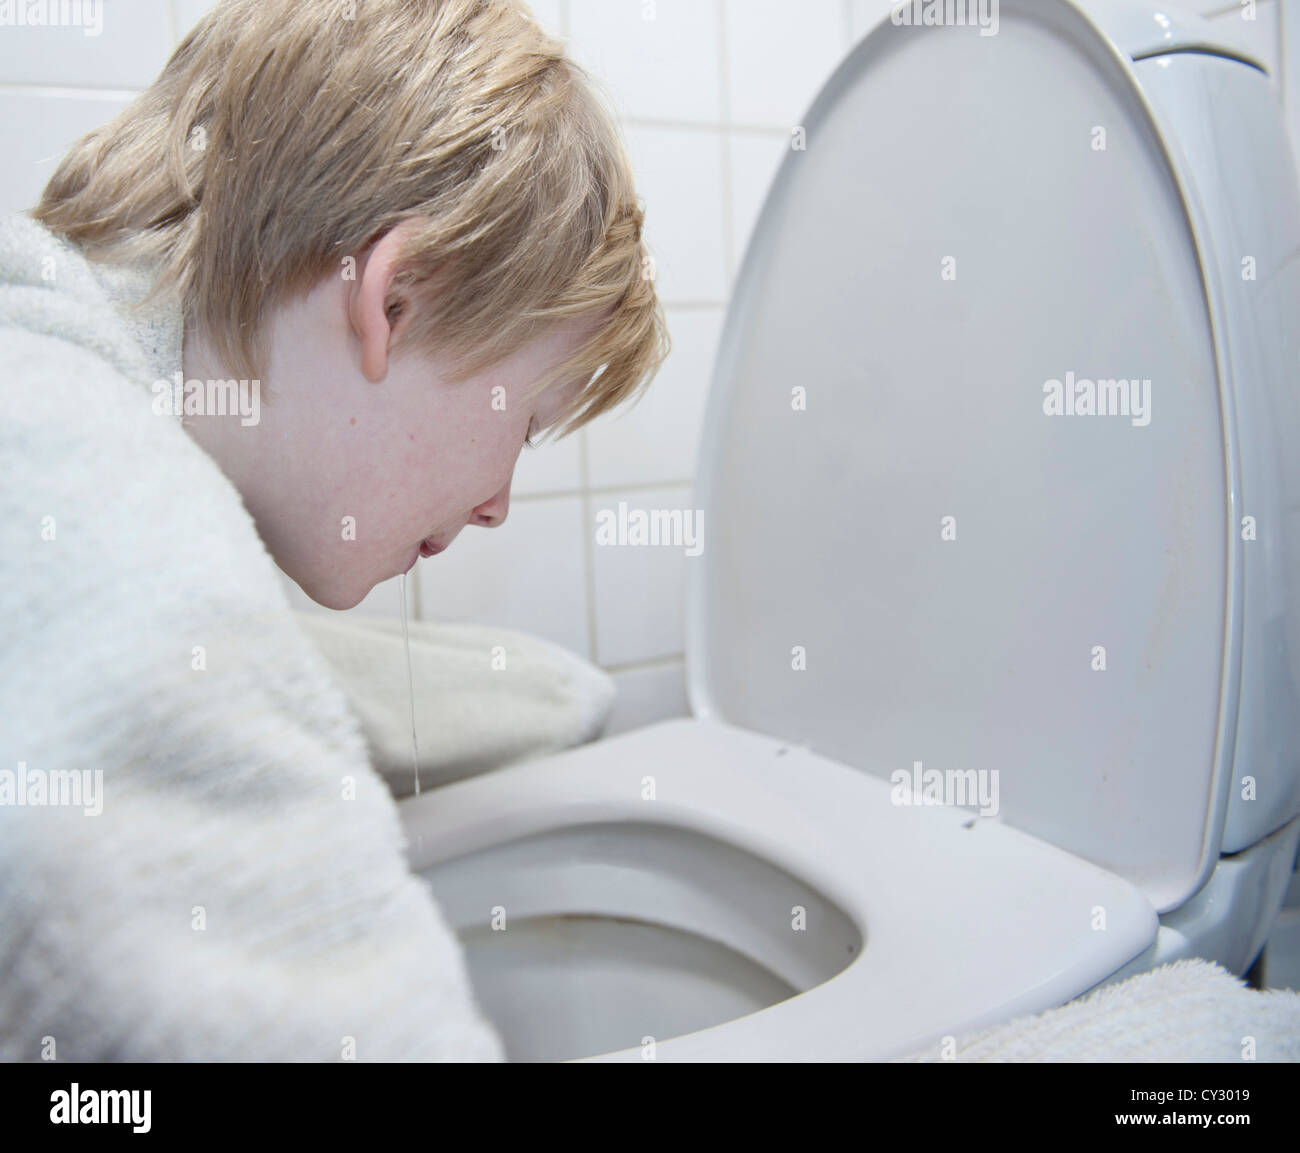 Junge mit Brechdurchfall Erbrechen in Toilette Stockfoto